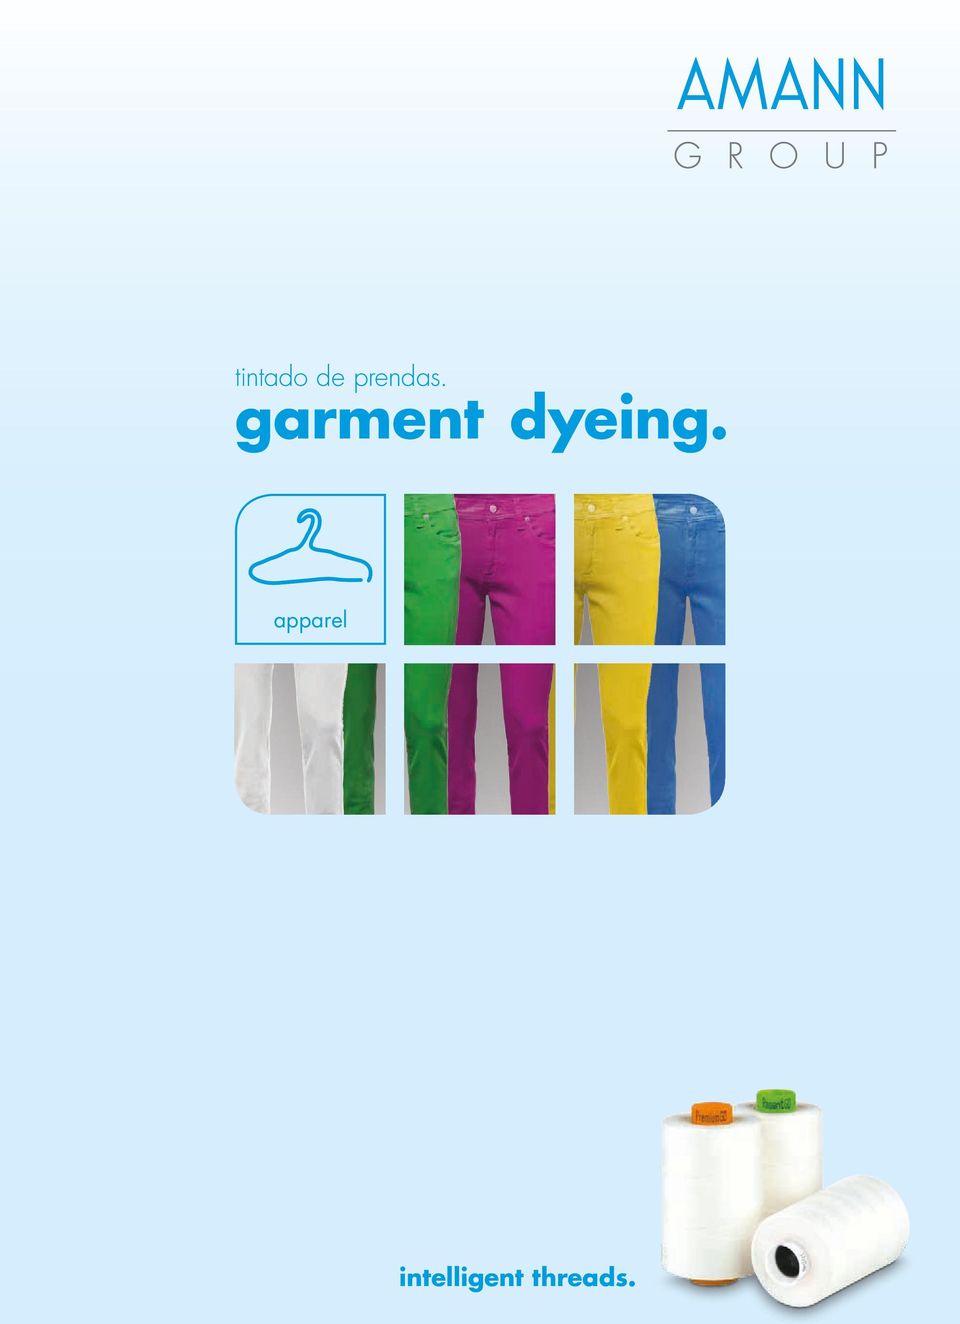 garment dyeing.